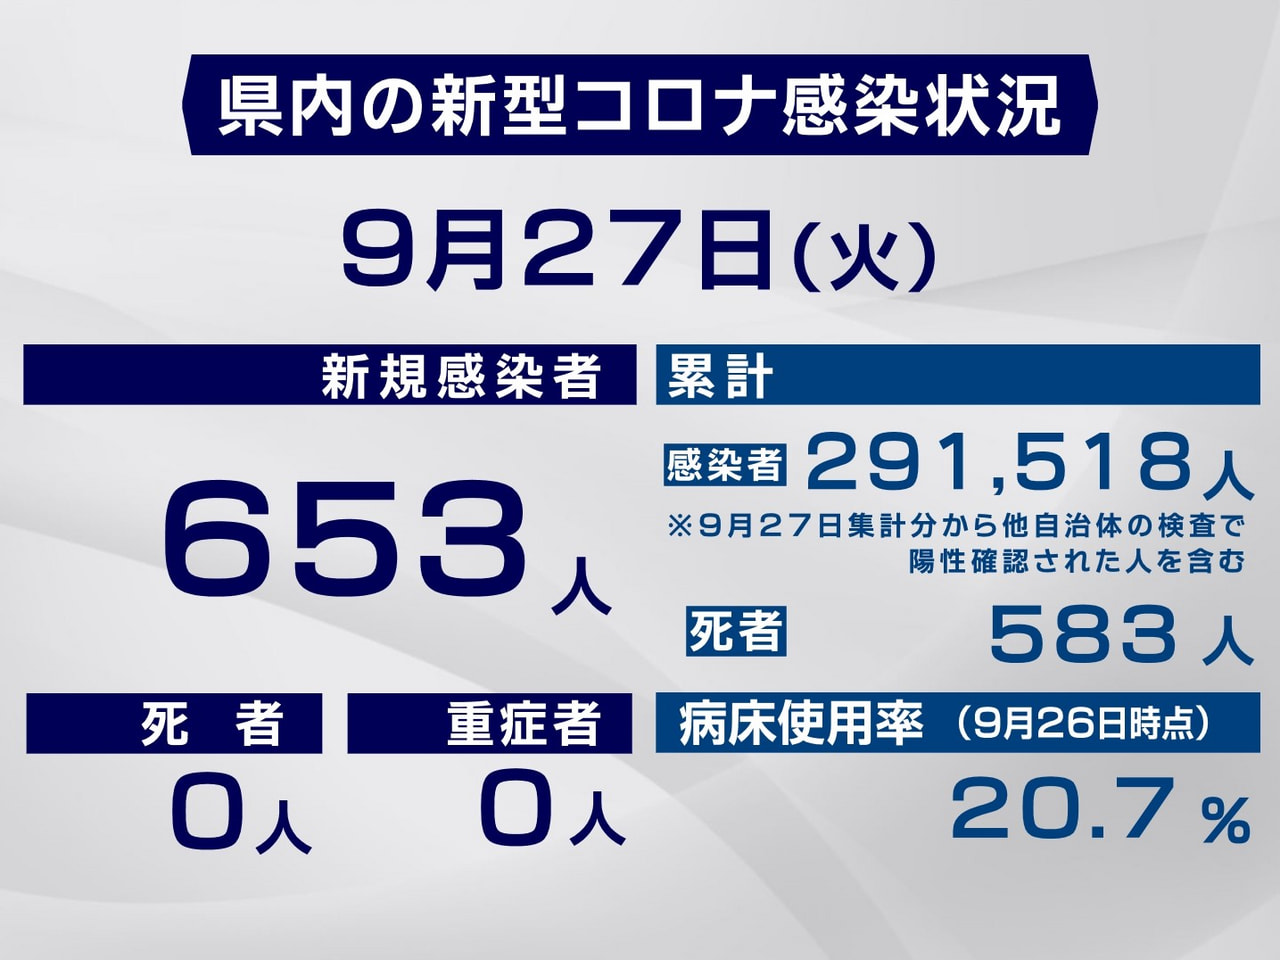 岐阜県は２７日、新型コロナウイルスの感染者が新たに６５３人確認されたと発表しまし...